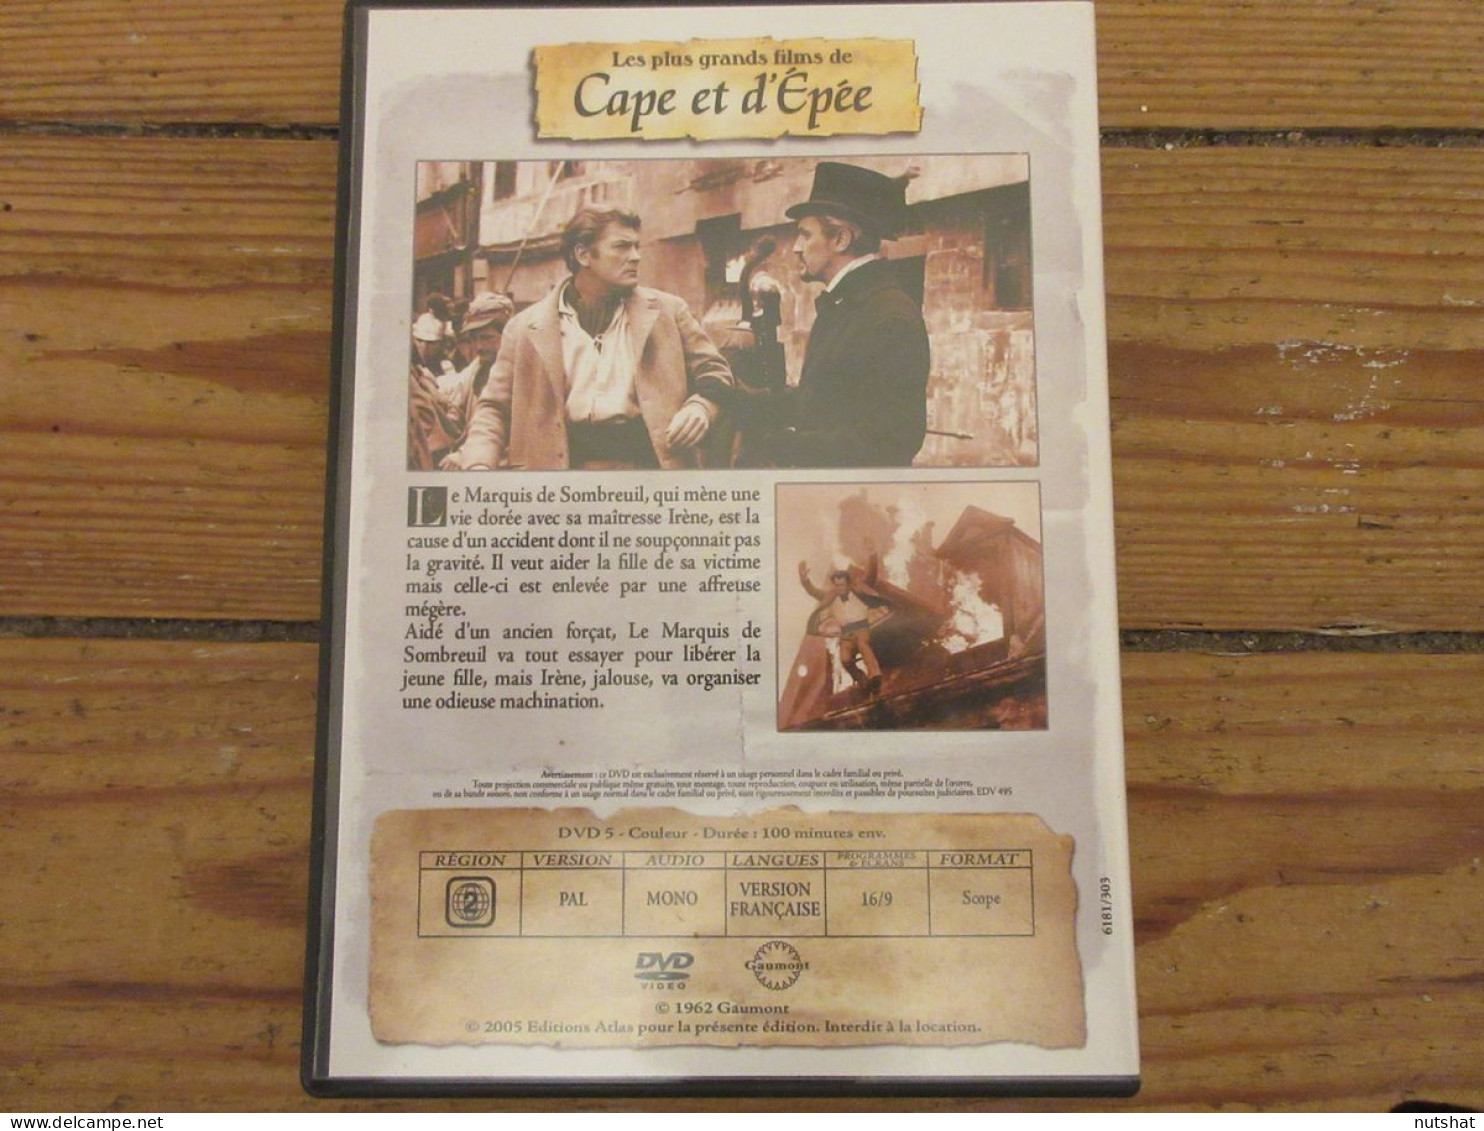 DVD CINEMA CAPE Et EPEE Les MYSTERES De PARIS Jean MARAIS 2005 100mn Francais - Series Y Programas De TV